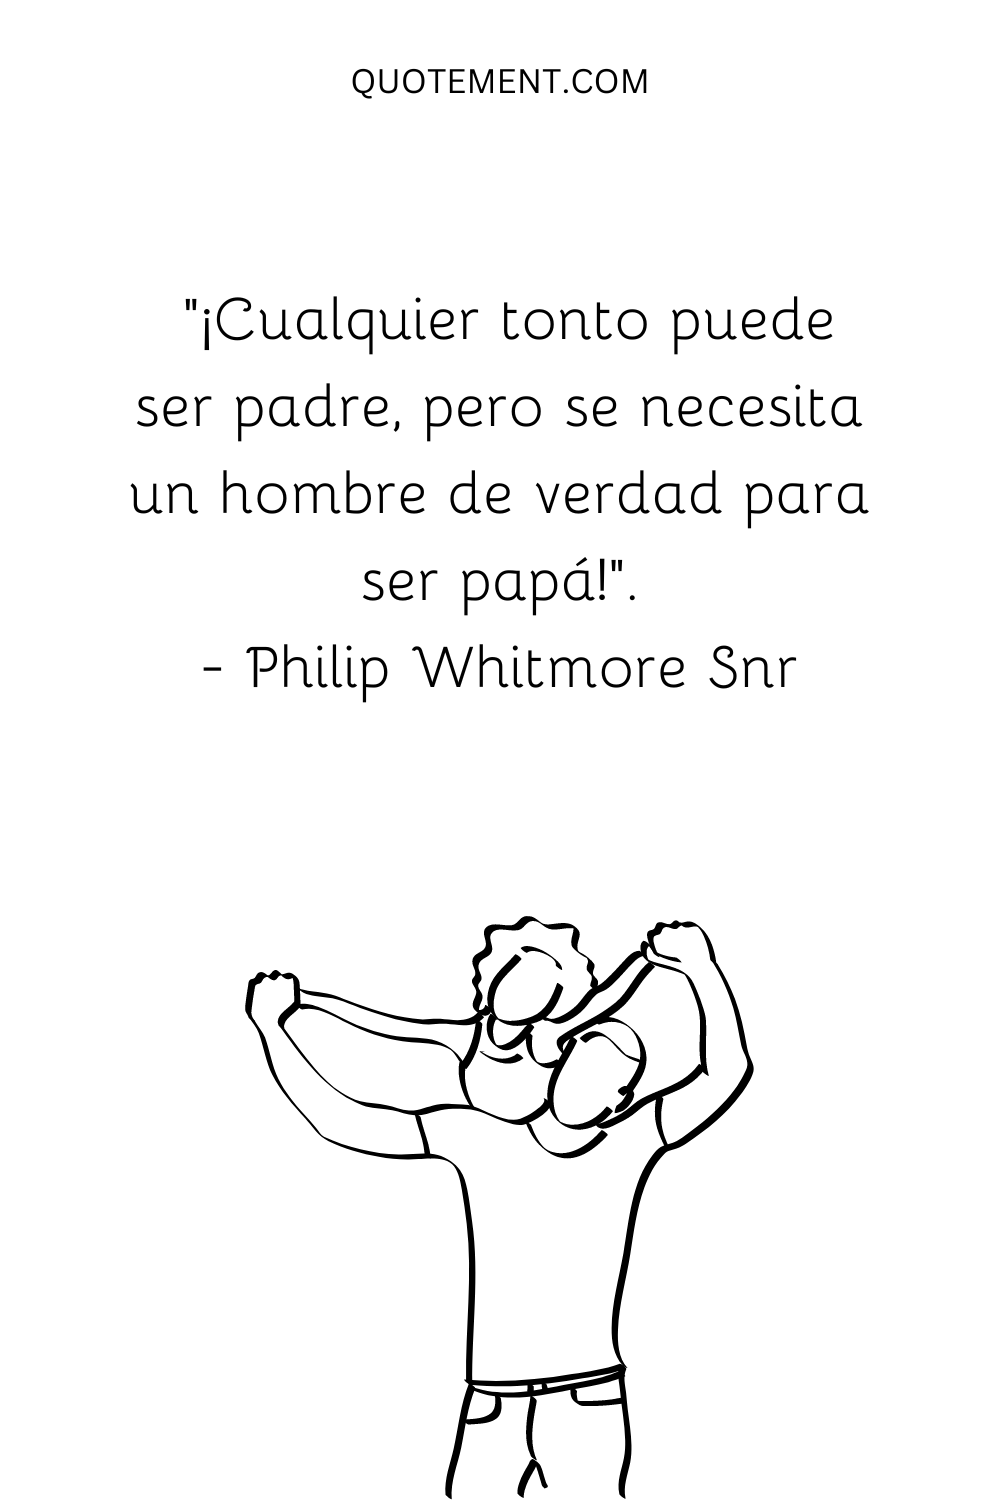 "¡Cualquier tonto puede ser padre, pero se necesita un hombre de verdad para ser papá!" - Philip Whitmore Snr